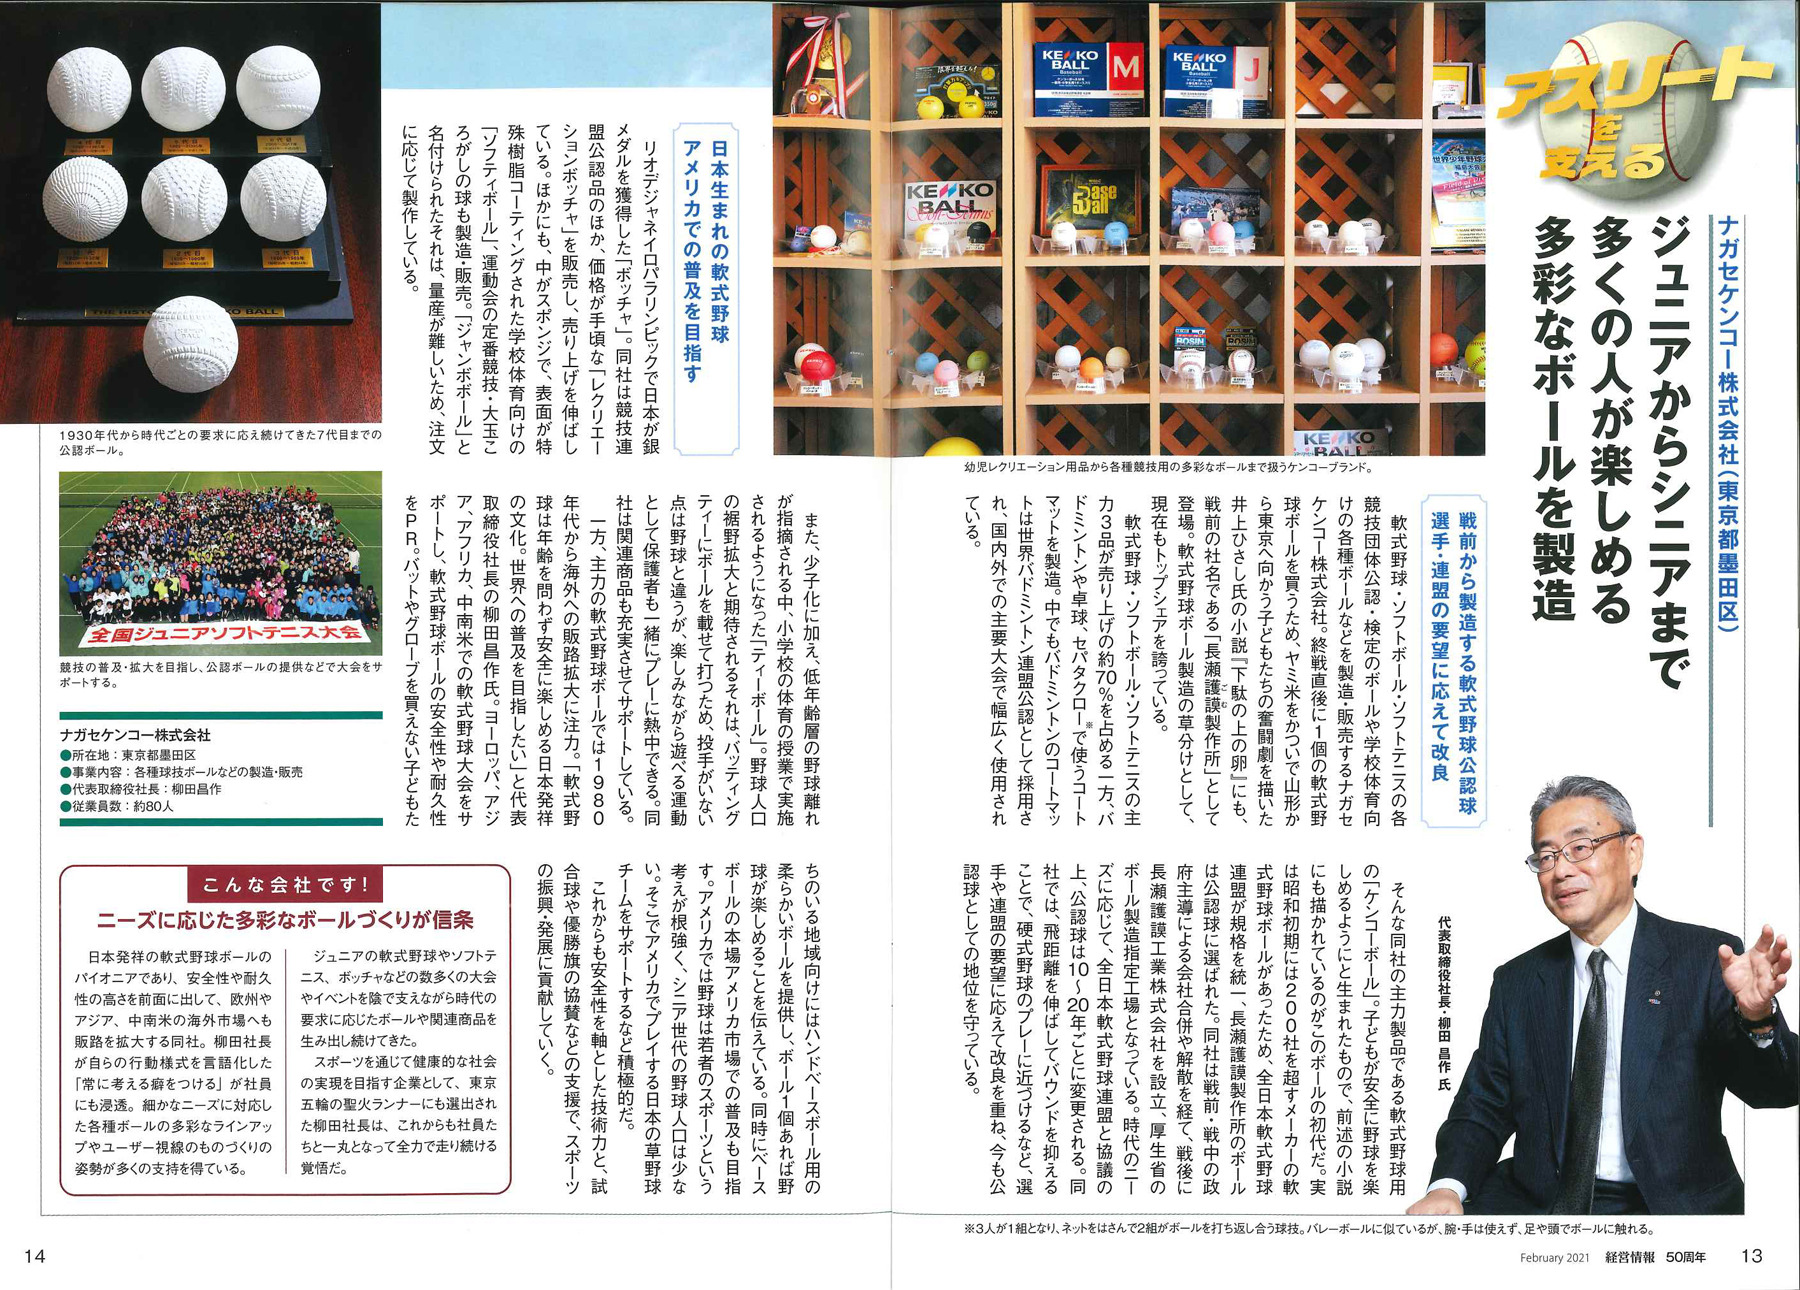 日本生命広報誌「経営情報2月号」に掲載されました